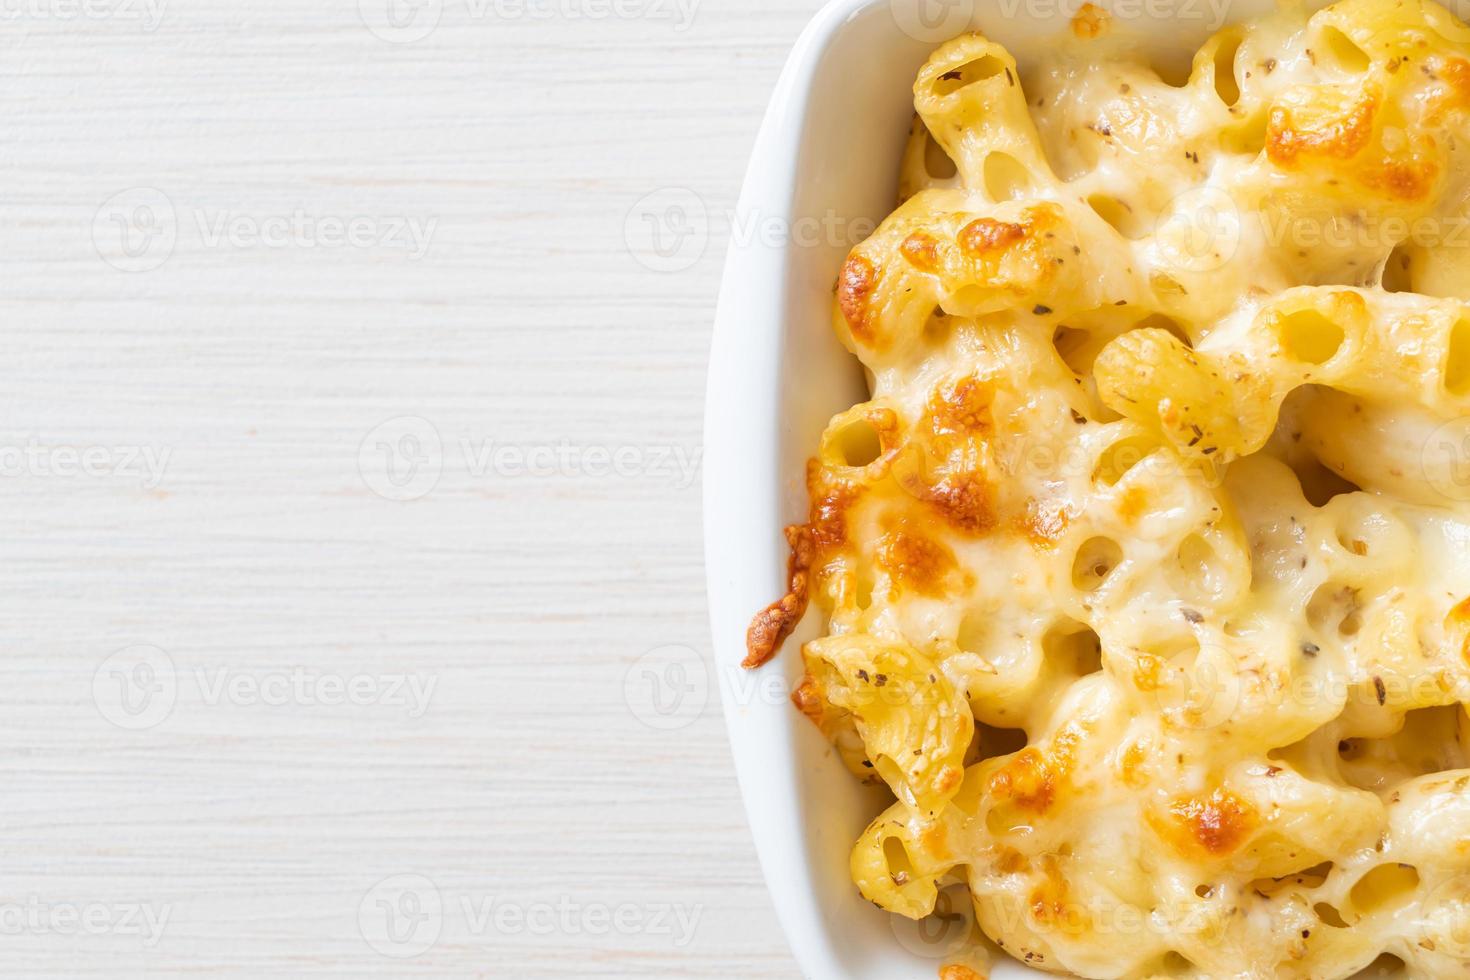 amerikaanse mac en kaas, macaroni pasta in kaassaus foto